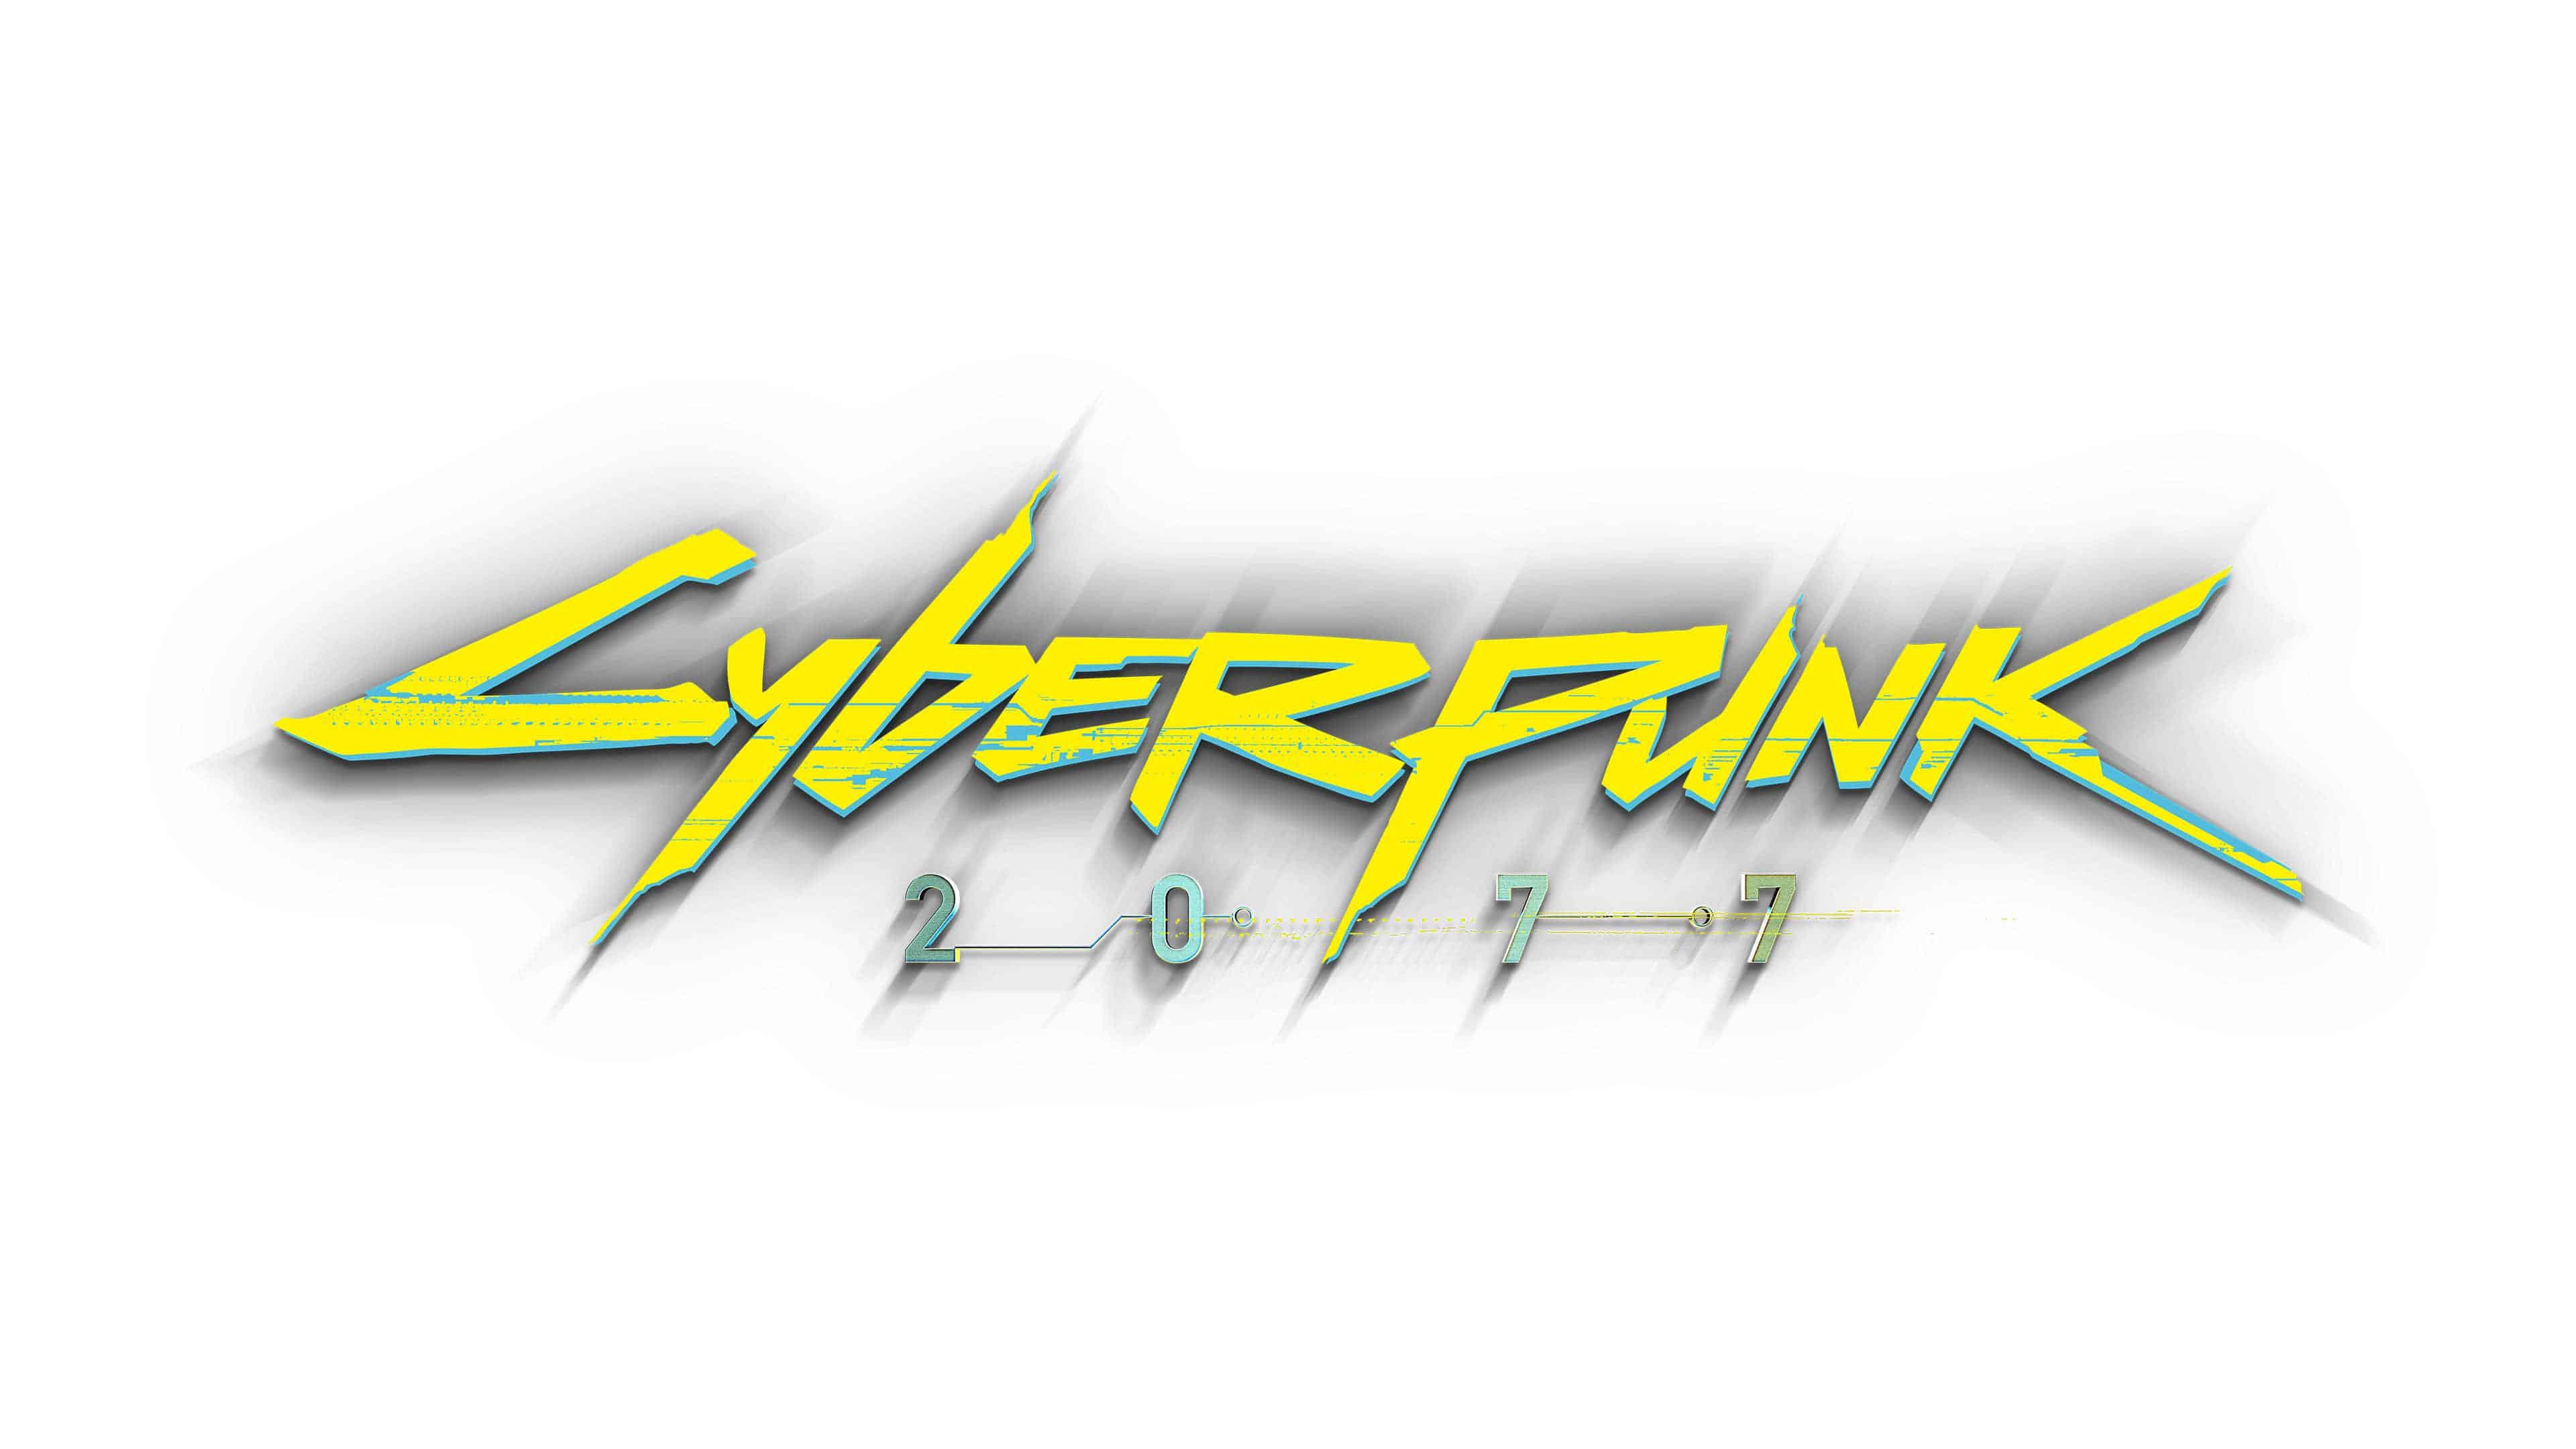 3840 x 2160 · jpeg - Cyberpunk 2077 Logo Wallpapers - Wallpaper Cave